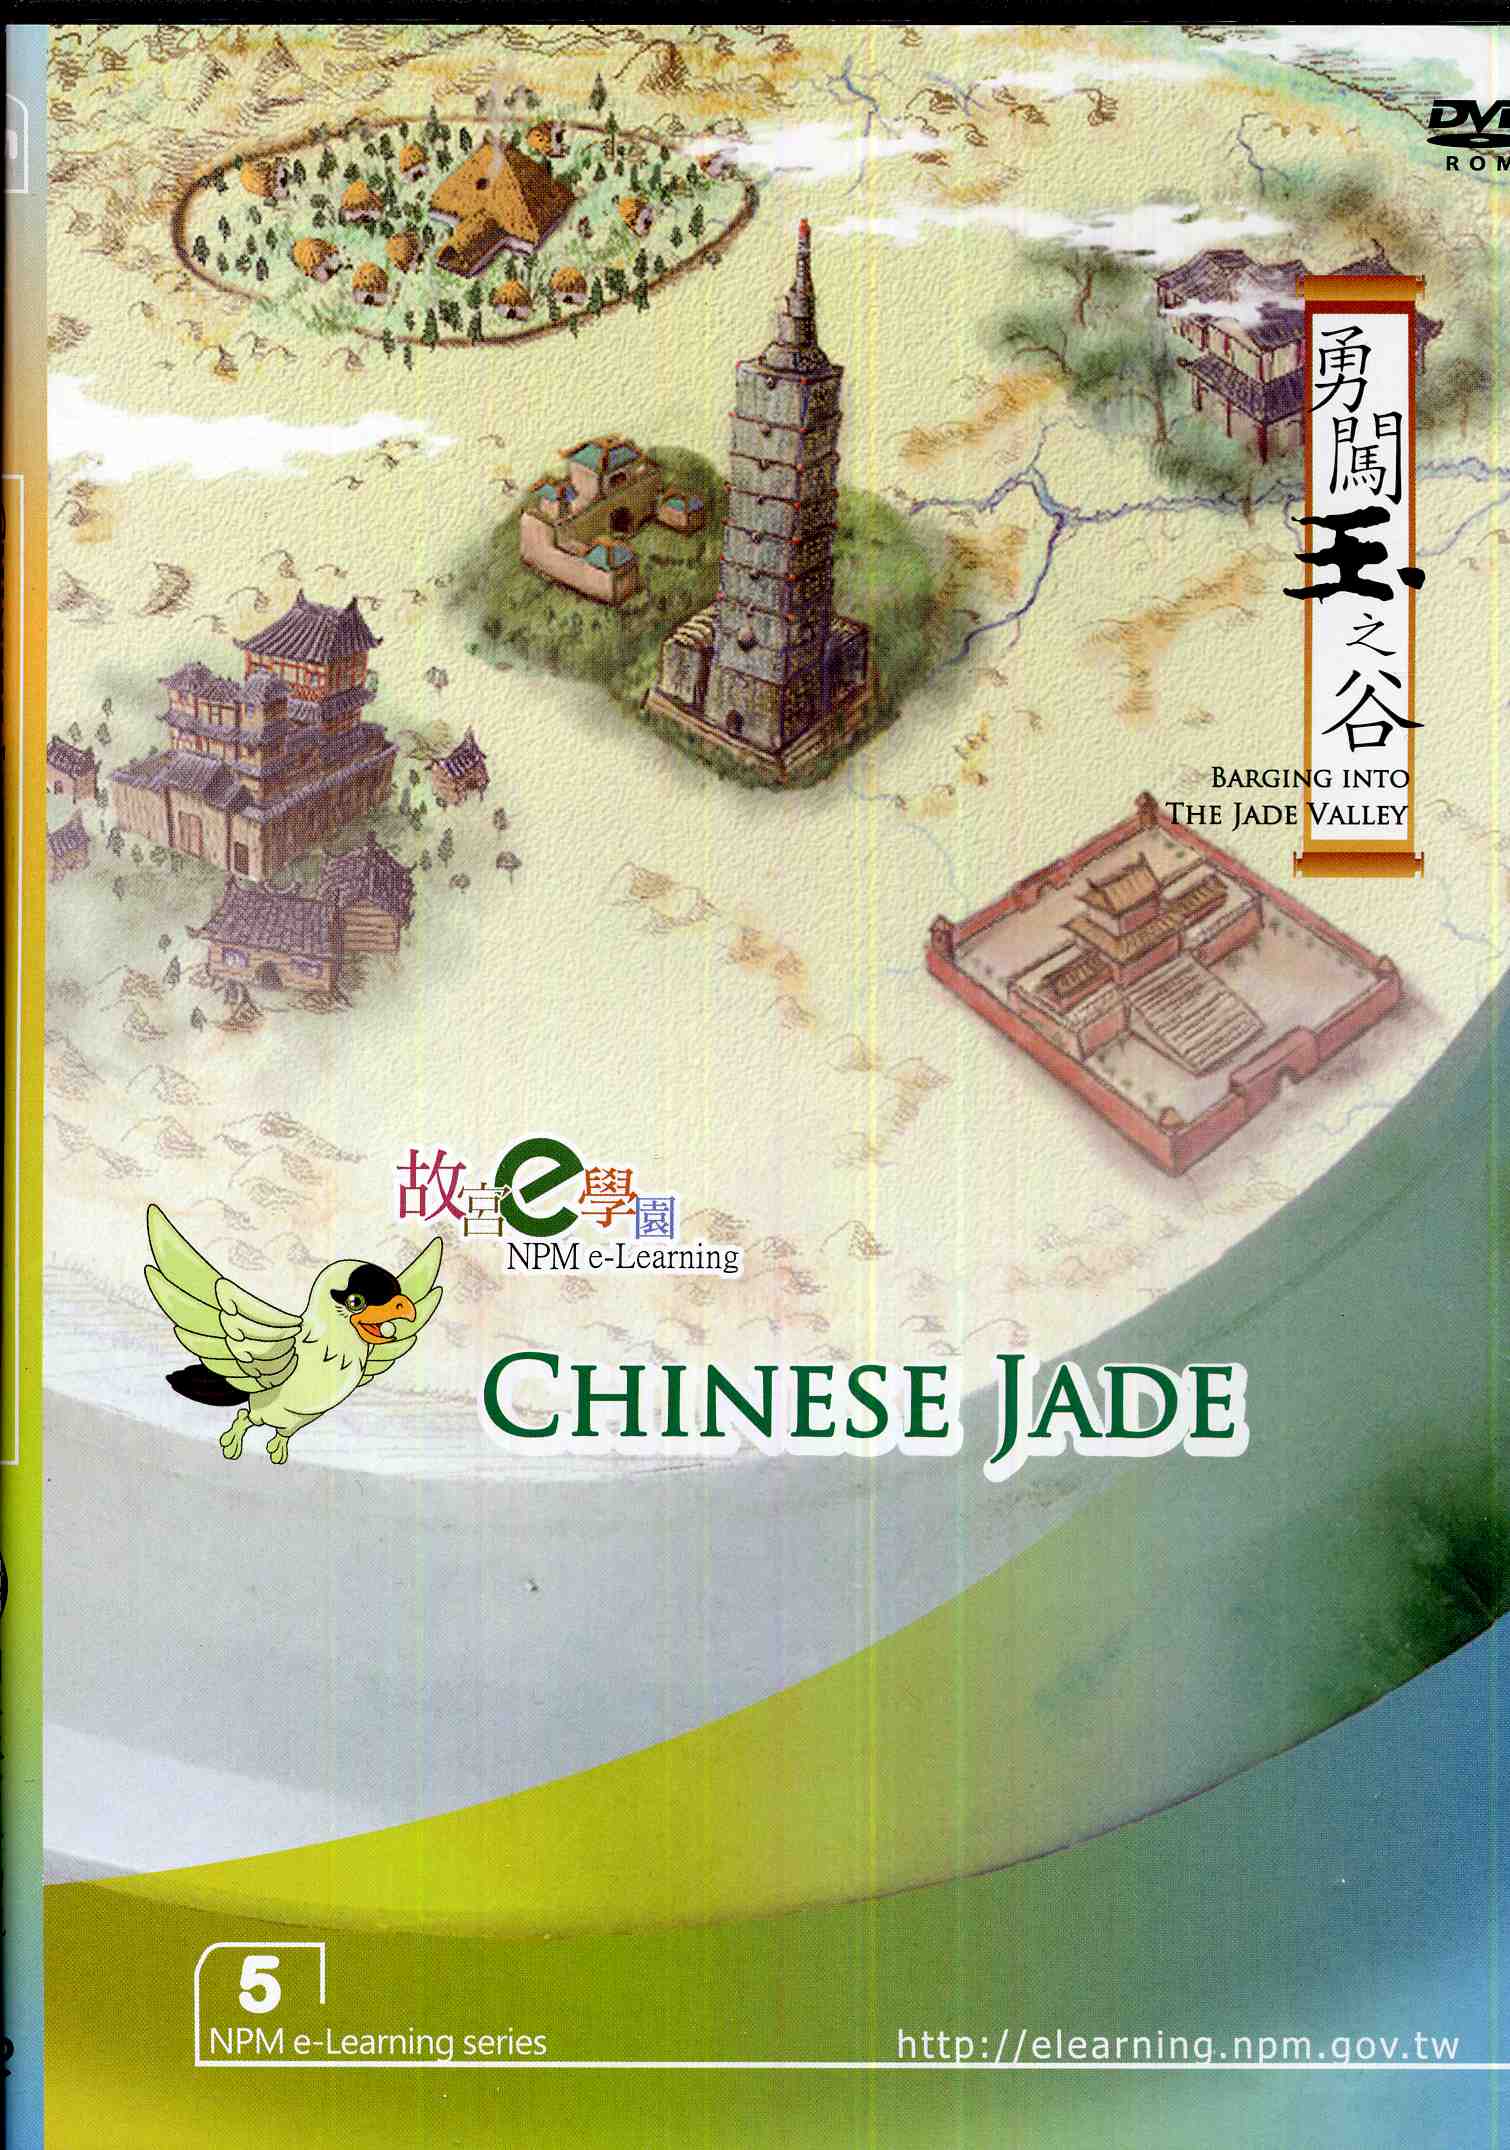 中國玉器數位學習課程(英文版)